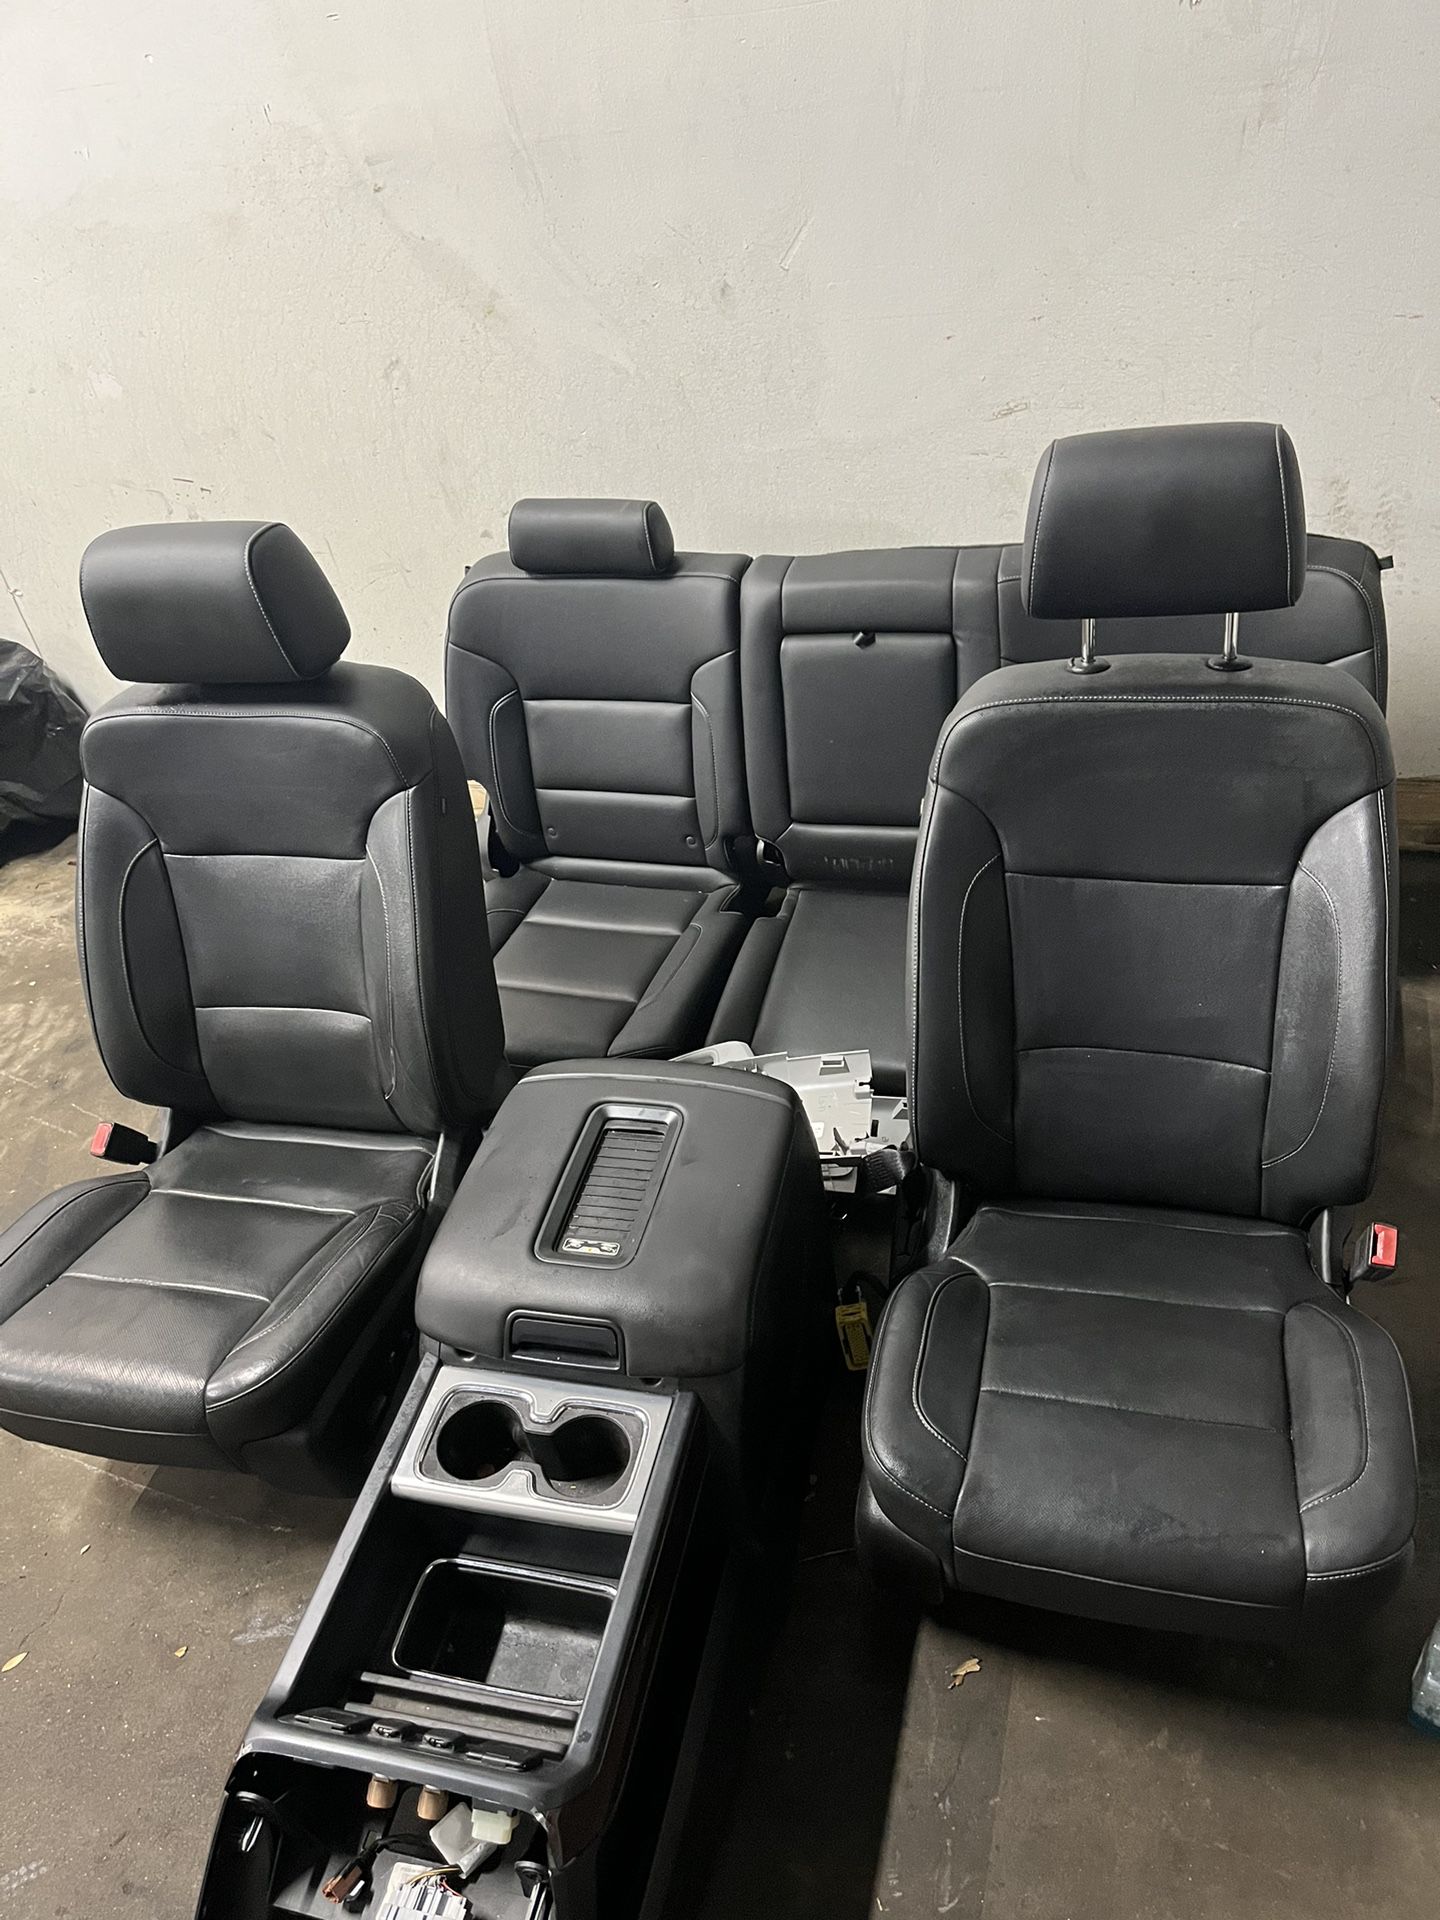 2017 Gmc Sierra 1500 Leather Interior Parts